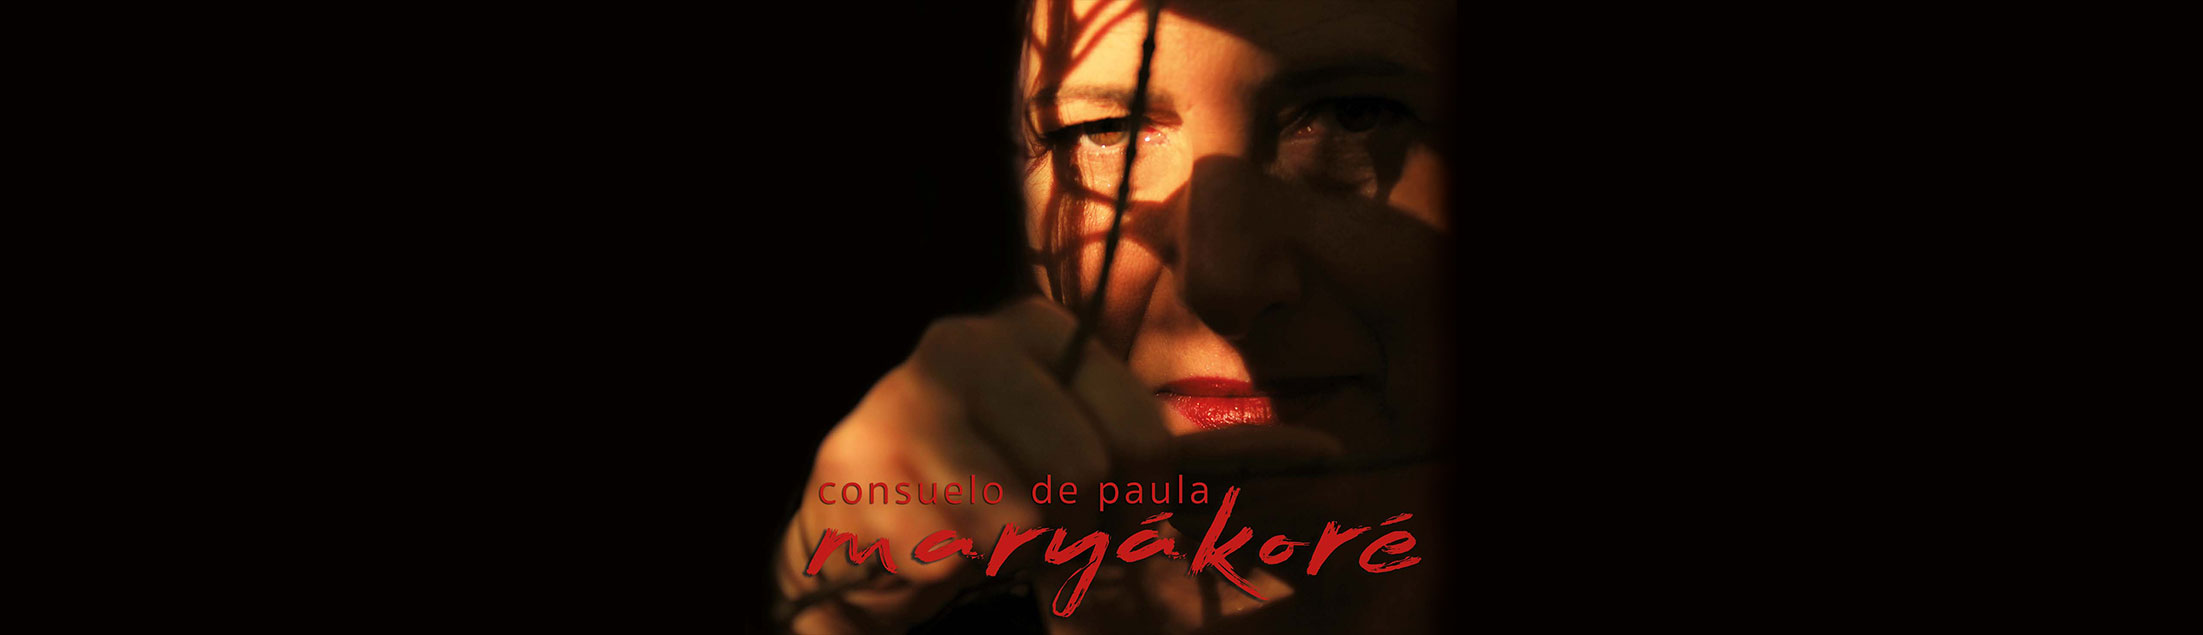 O Sesc Belenzinho recebe show de Consuelo de Paula que lança o sétimo CD da carreira